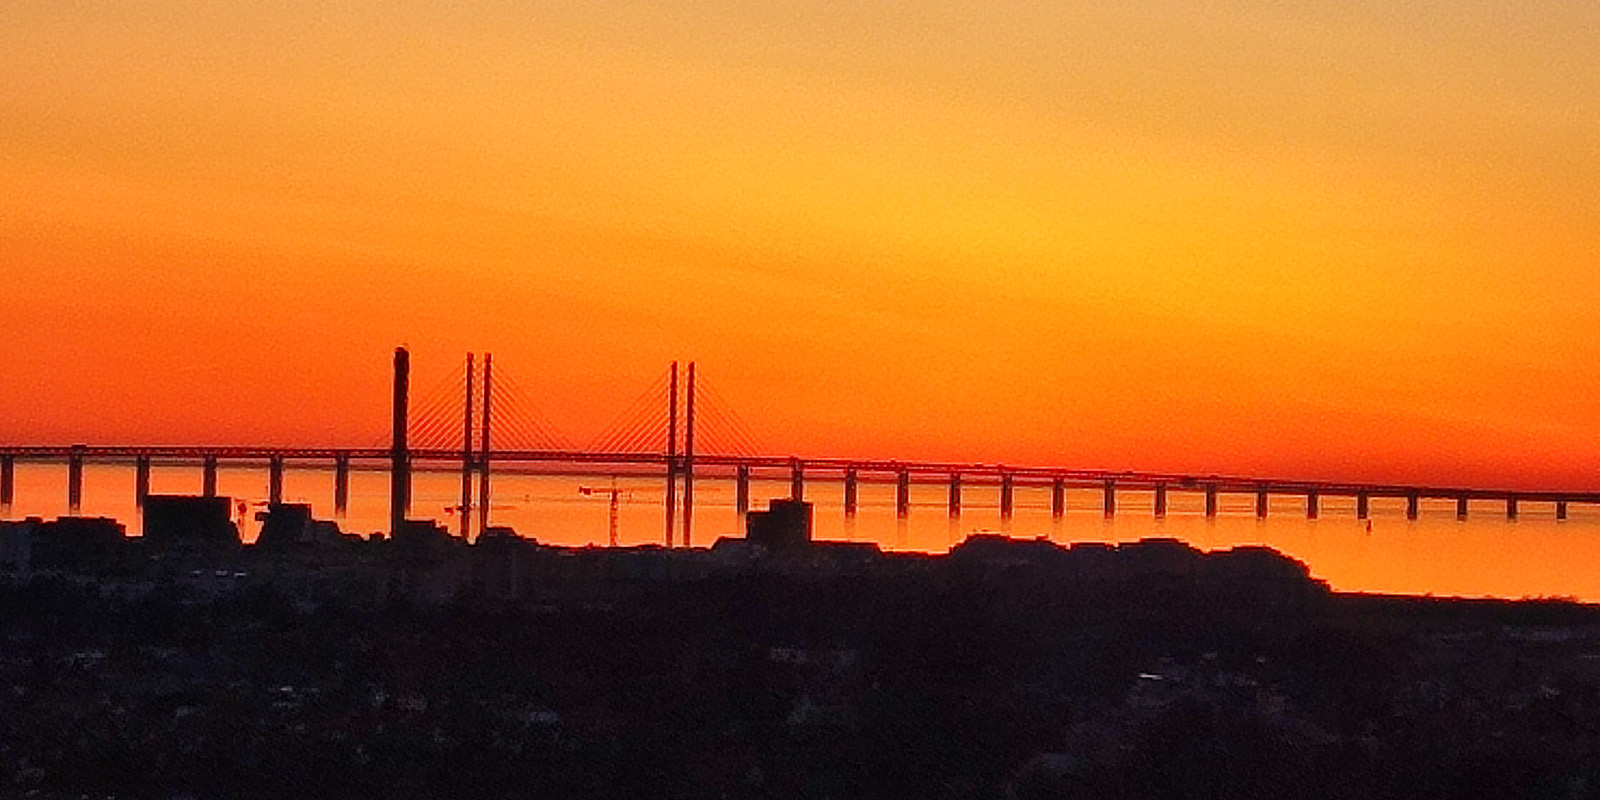 En solnedgång där himlen är alldeles orange/ röd och en bro syns i horisonten.